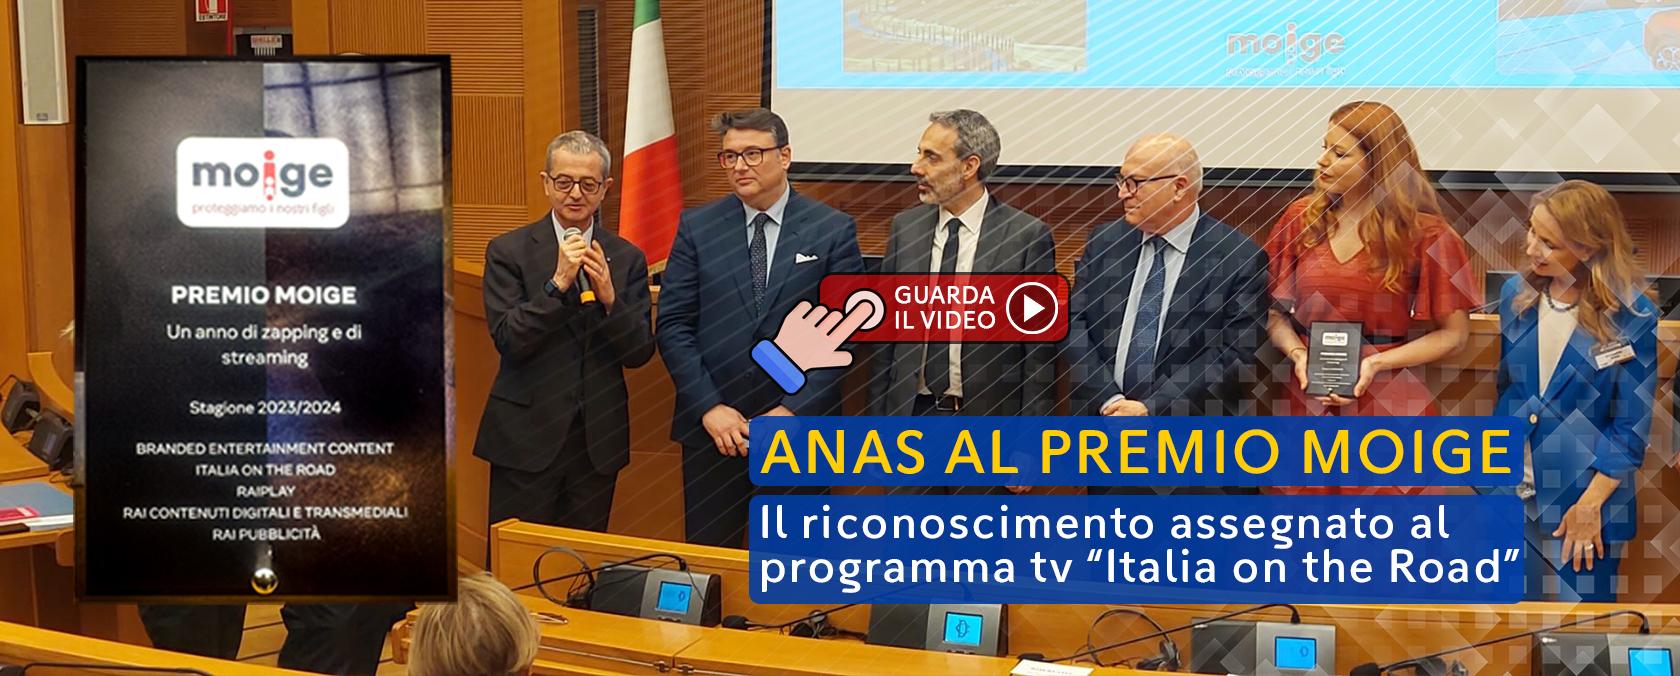 Anas al premio moige 2024 Il riconoscimento Assegnato al programma tv “italia on the road” 